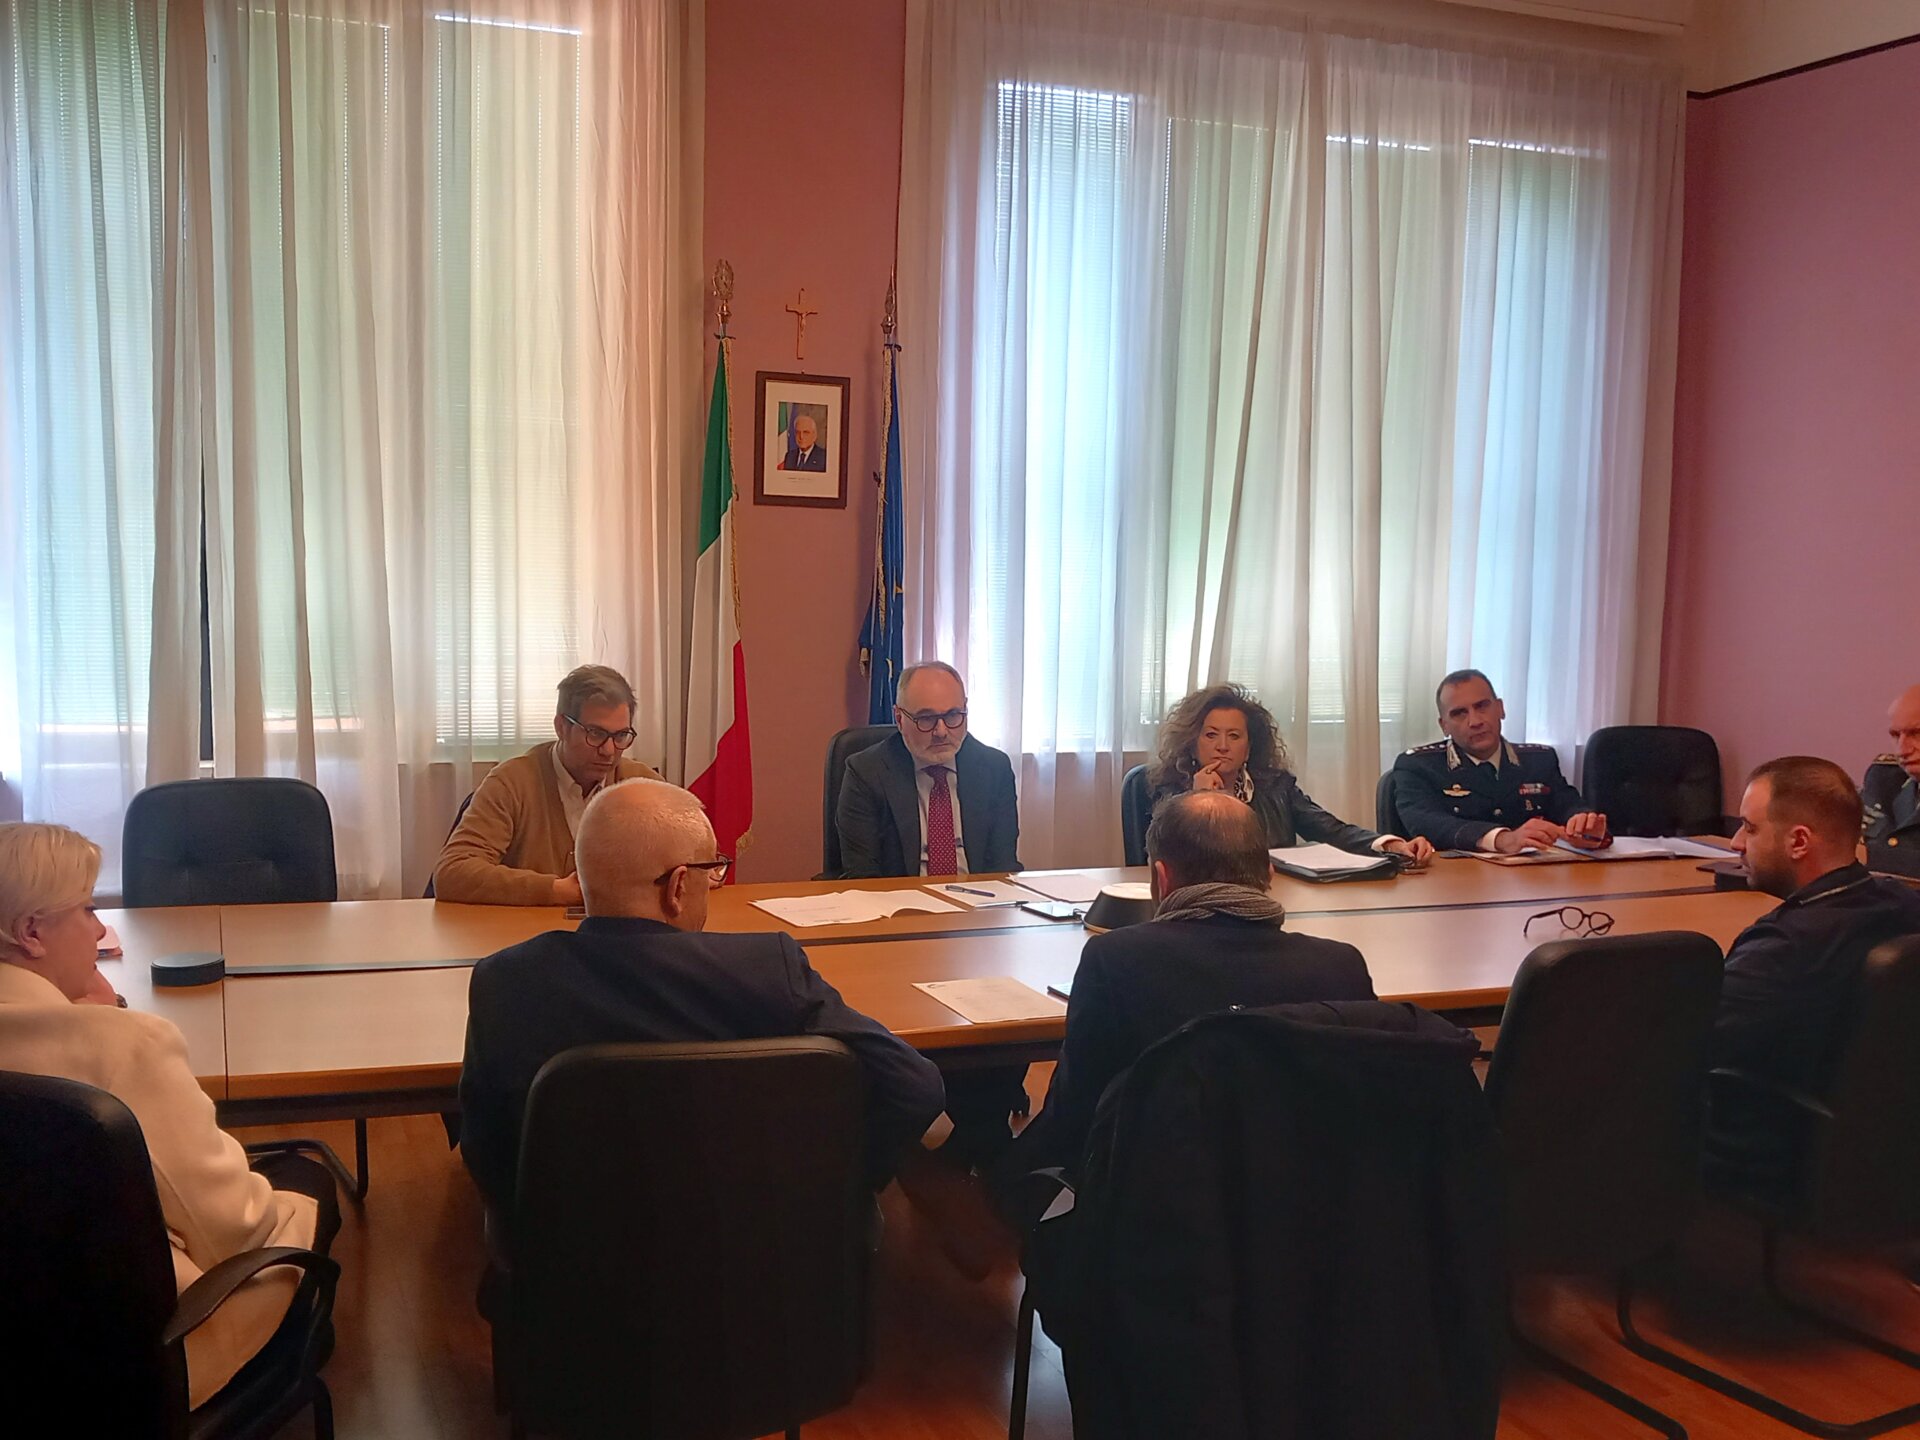 La riunione del Comitato provinciale per l'ordine e la sicurezza pubblica in cui si è deciso di non installare il maxischermo